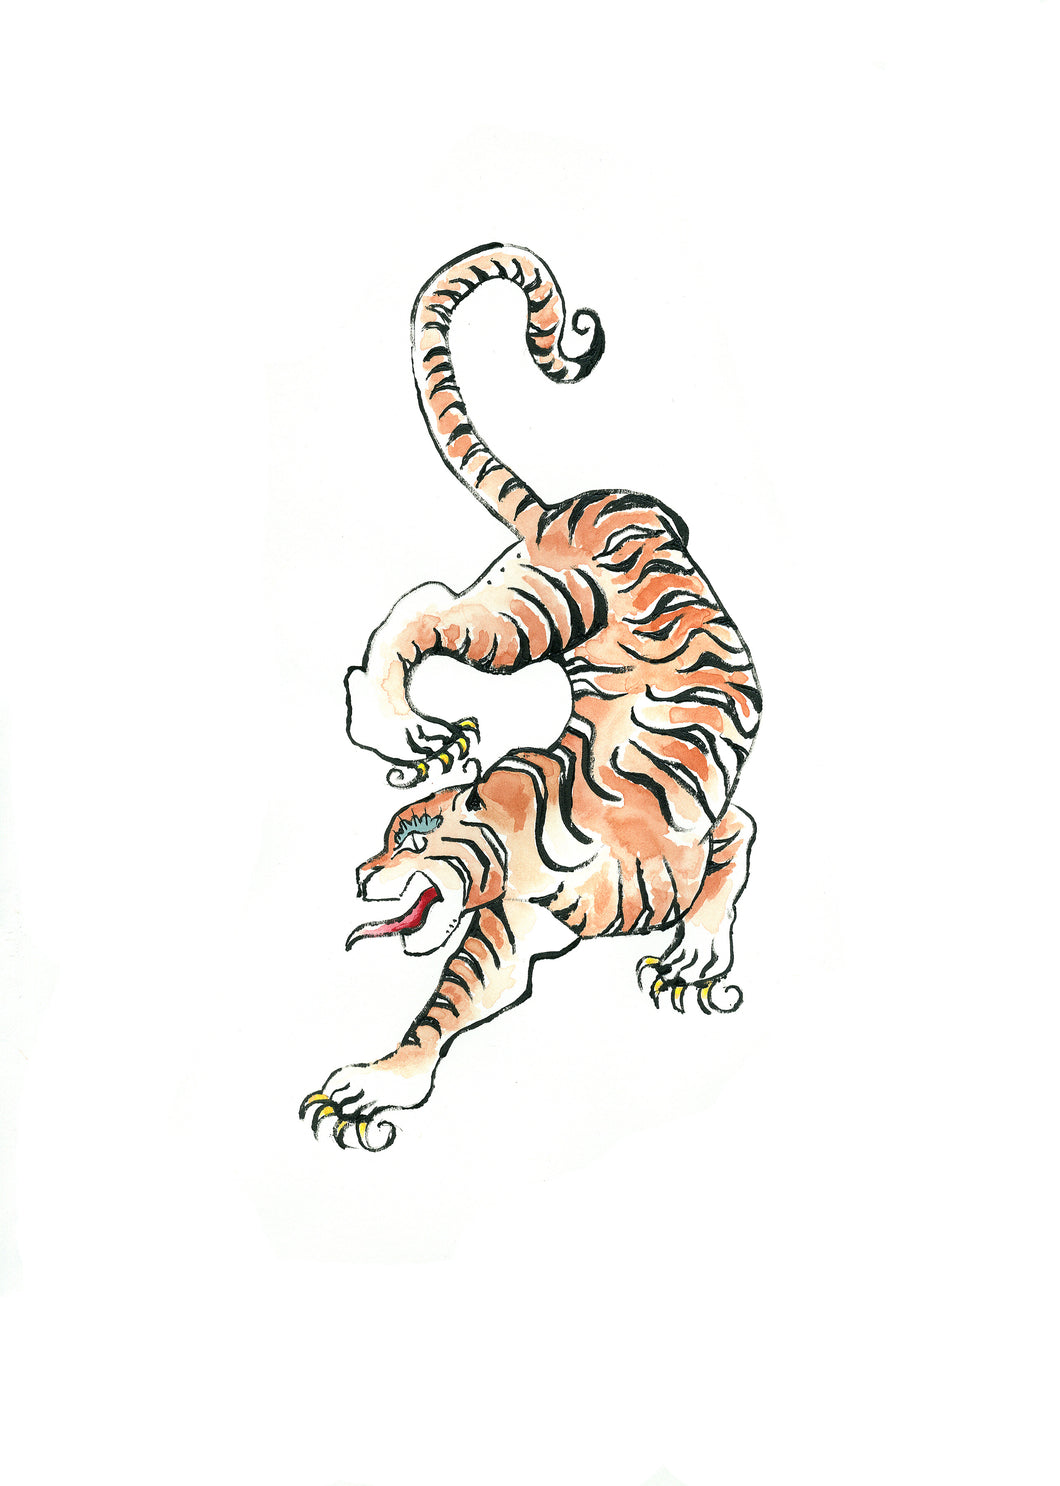 Tibetan Tiger Climbing - Signed Print